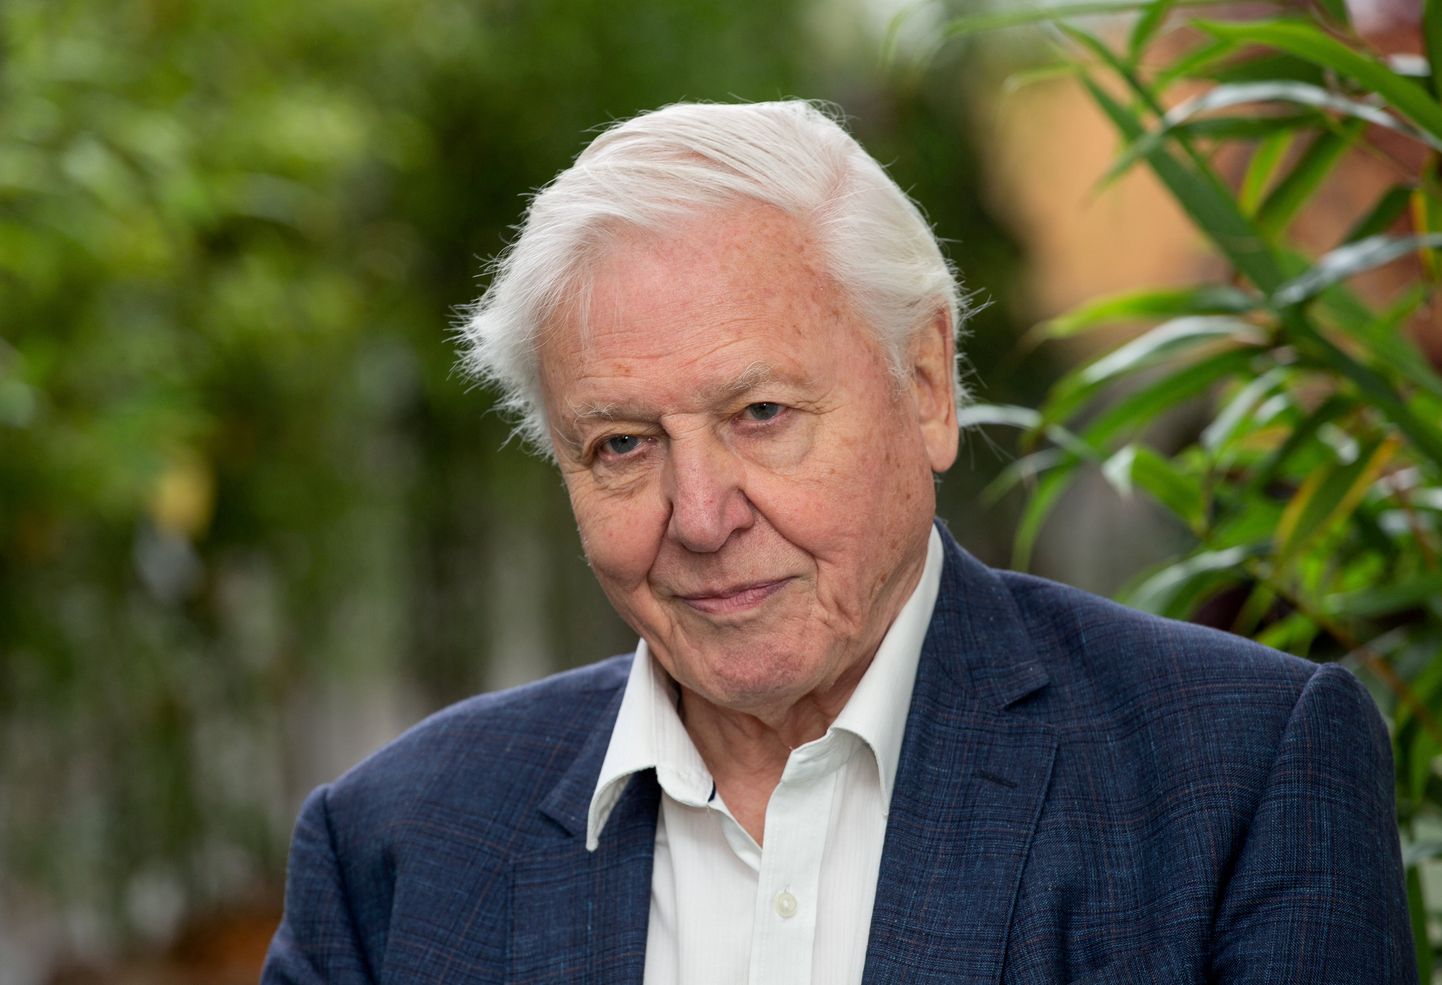 David Attenborough on väsimatult aastakümneid töötanud, et süvendada inimeste armastust looduse vastu.